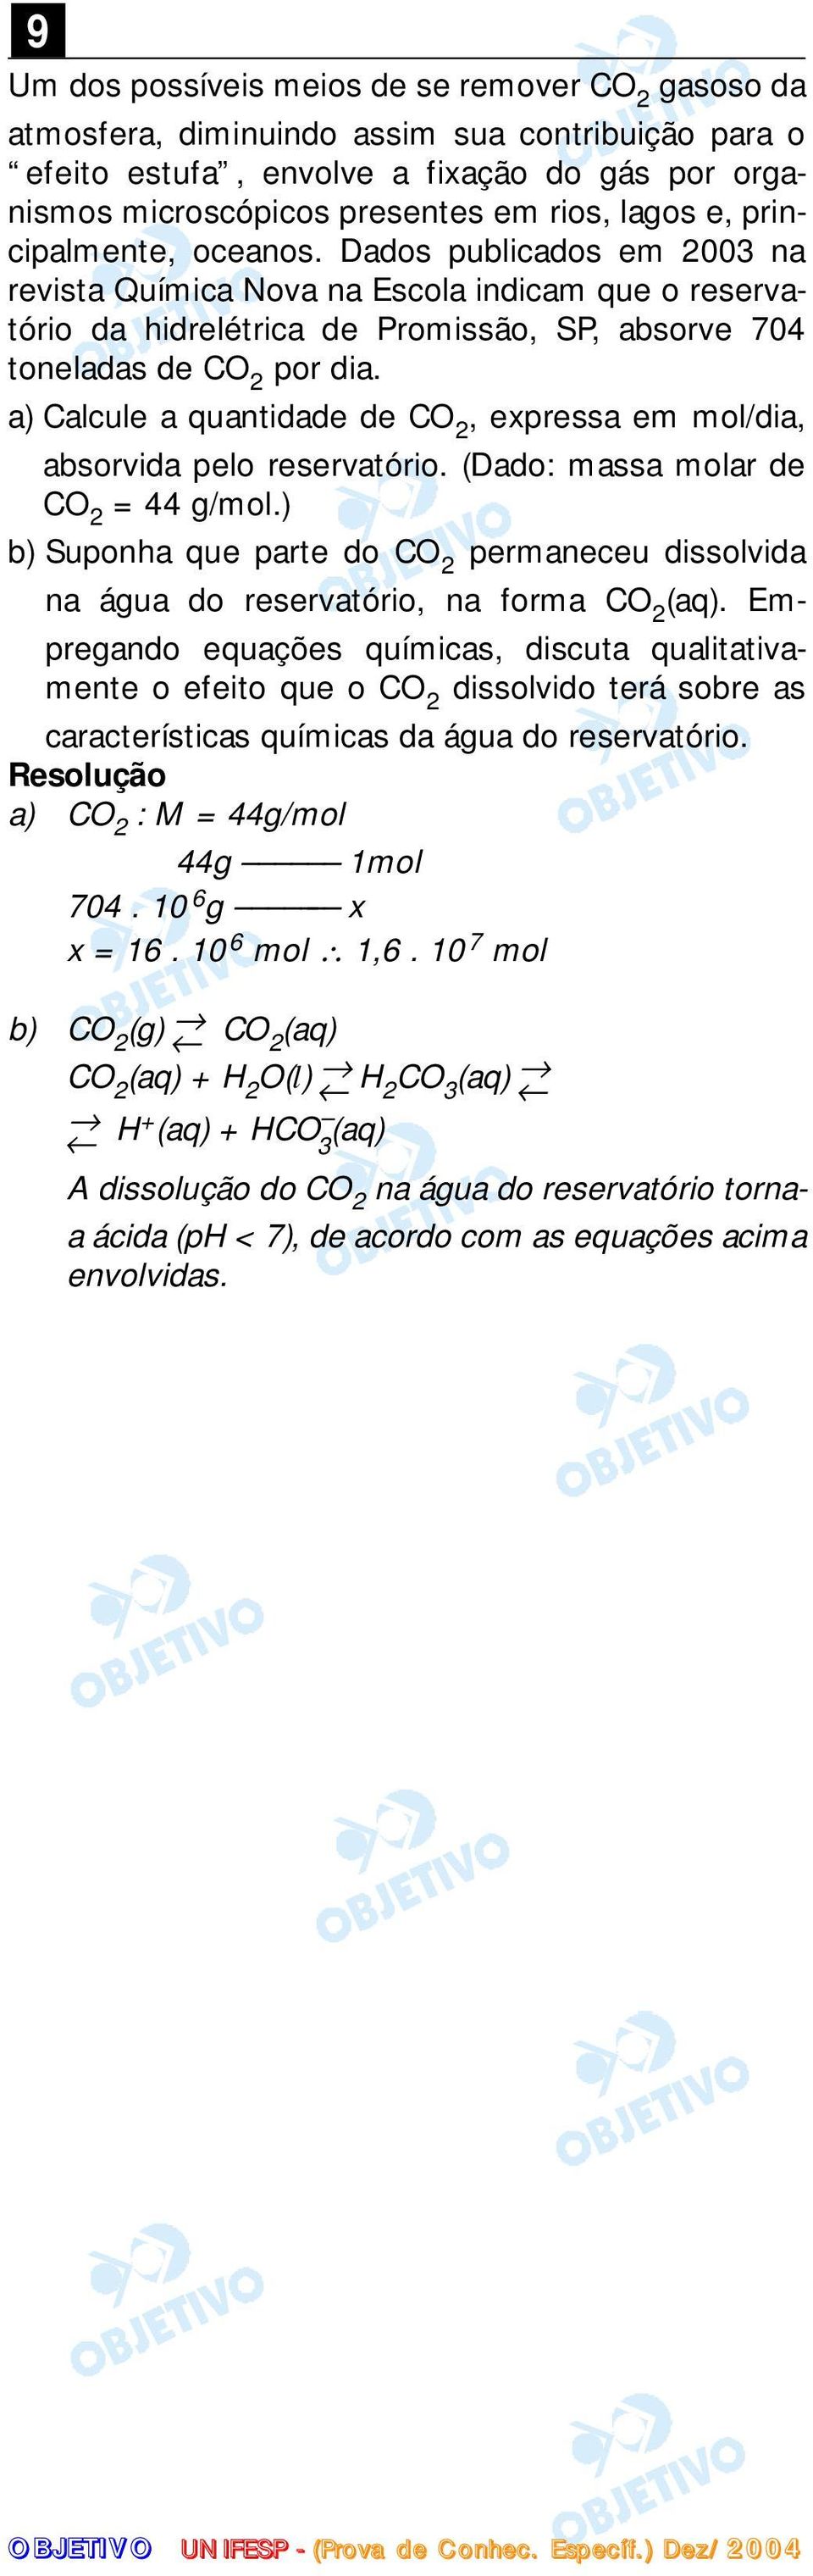 a) Calcule a quantidade de CO 2, expressa em mol/dia, absorvida pelo reservatório. (Dado: massa molar de CO 2 = 44 g/mol.